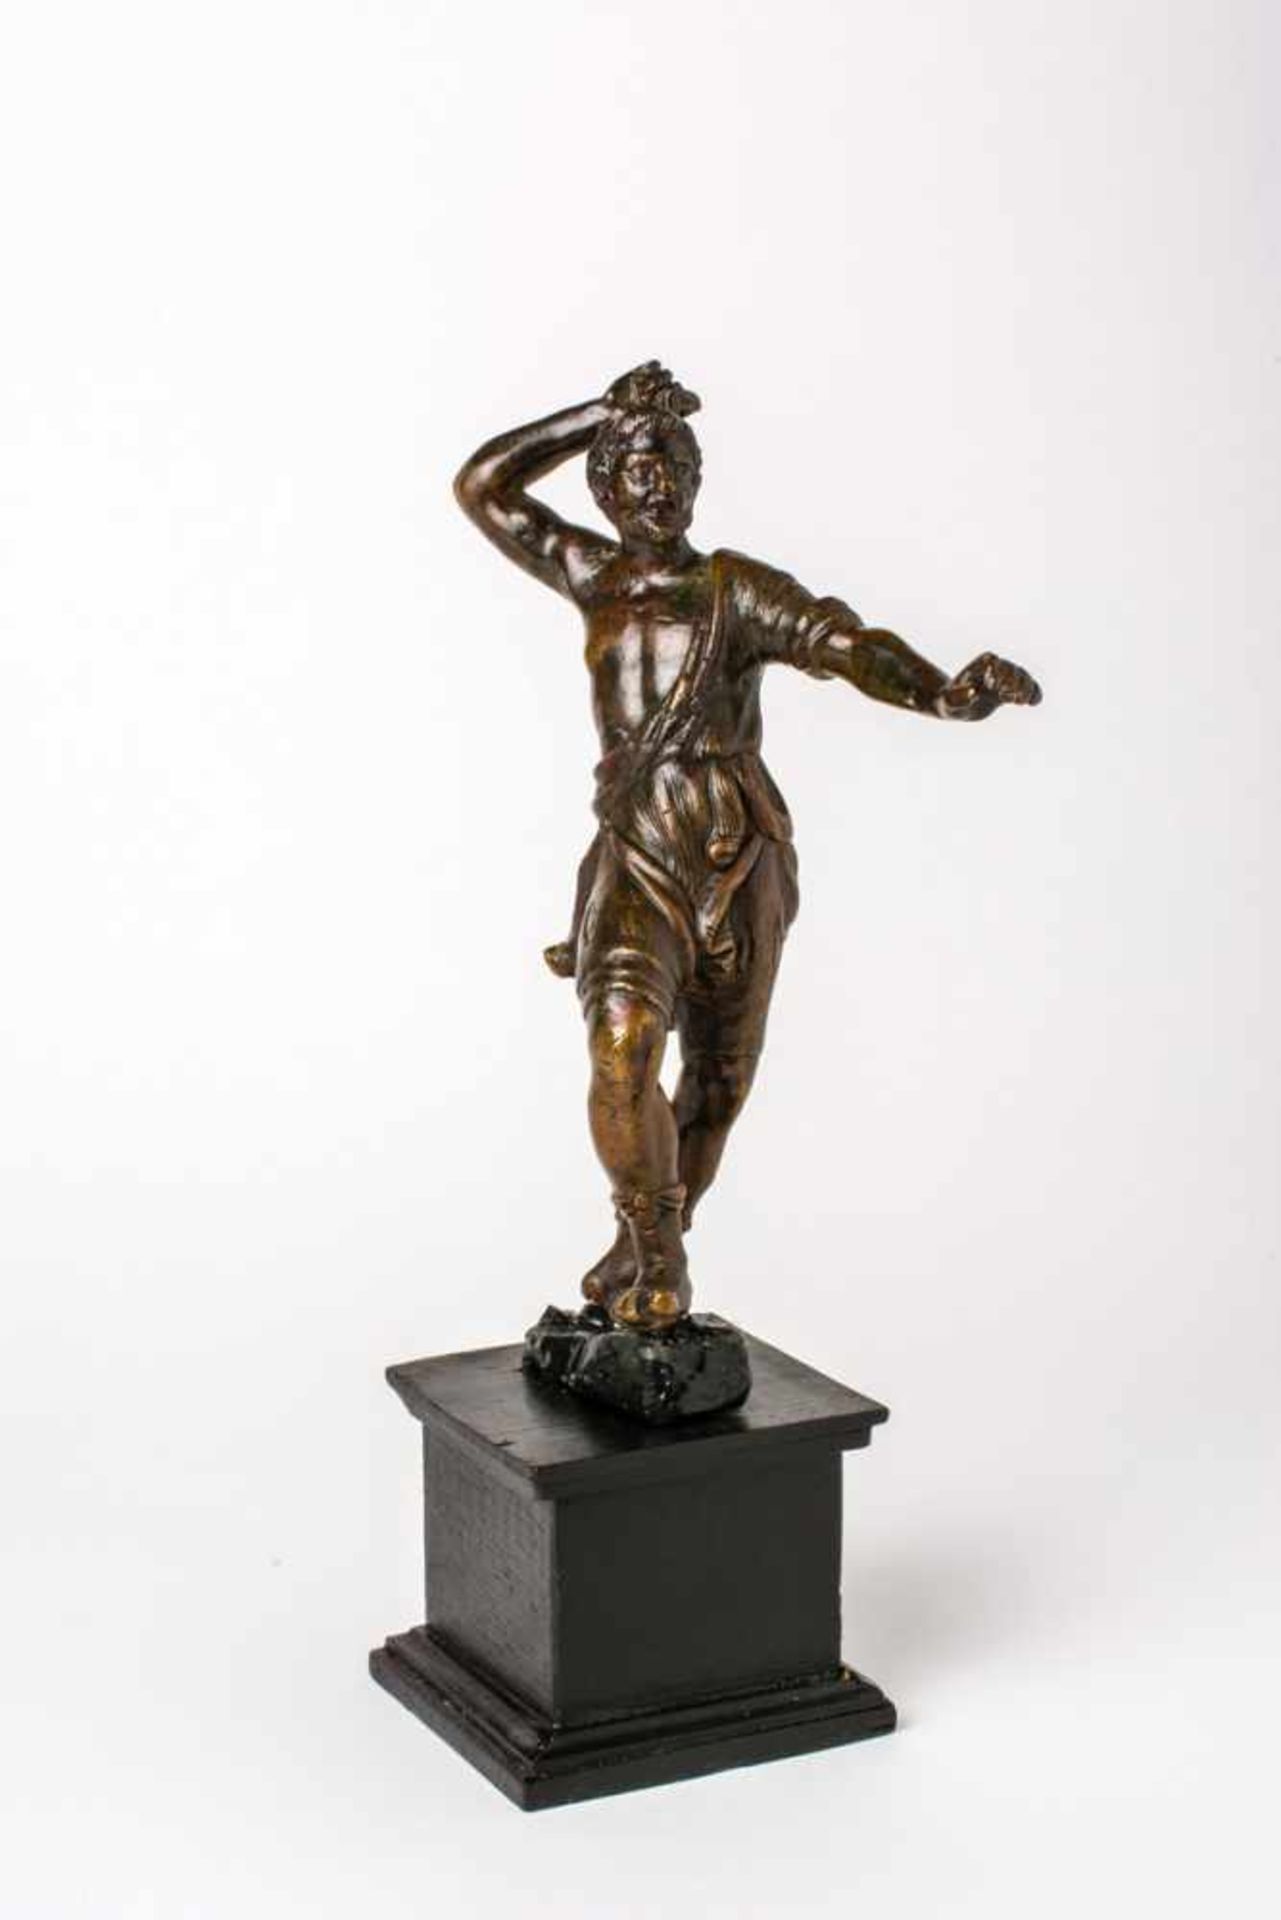 Speerwerfer Bronzefigur, wohl 16. / 17. Jh. 17,2 cm hoch, Sockel 6 cm Javelin thrower, Bronze